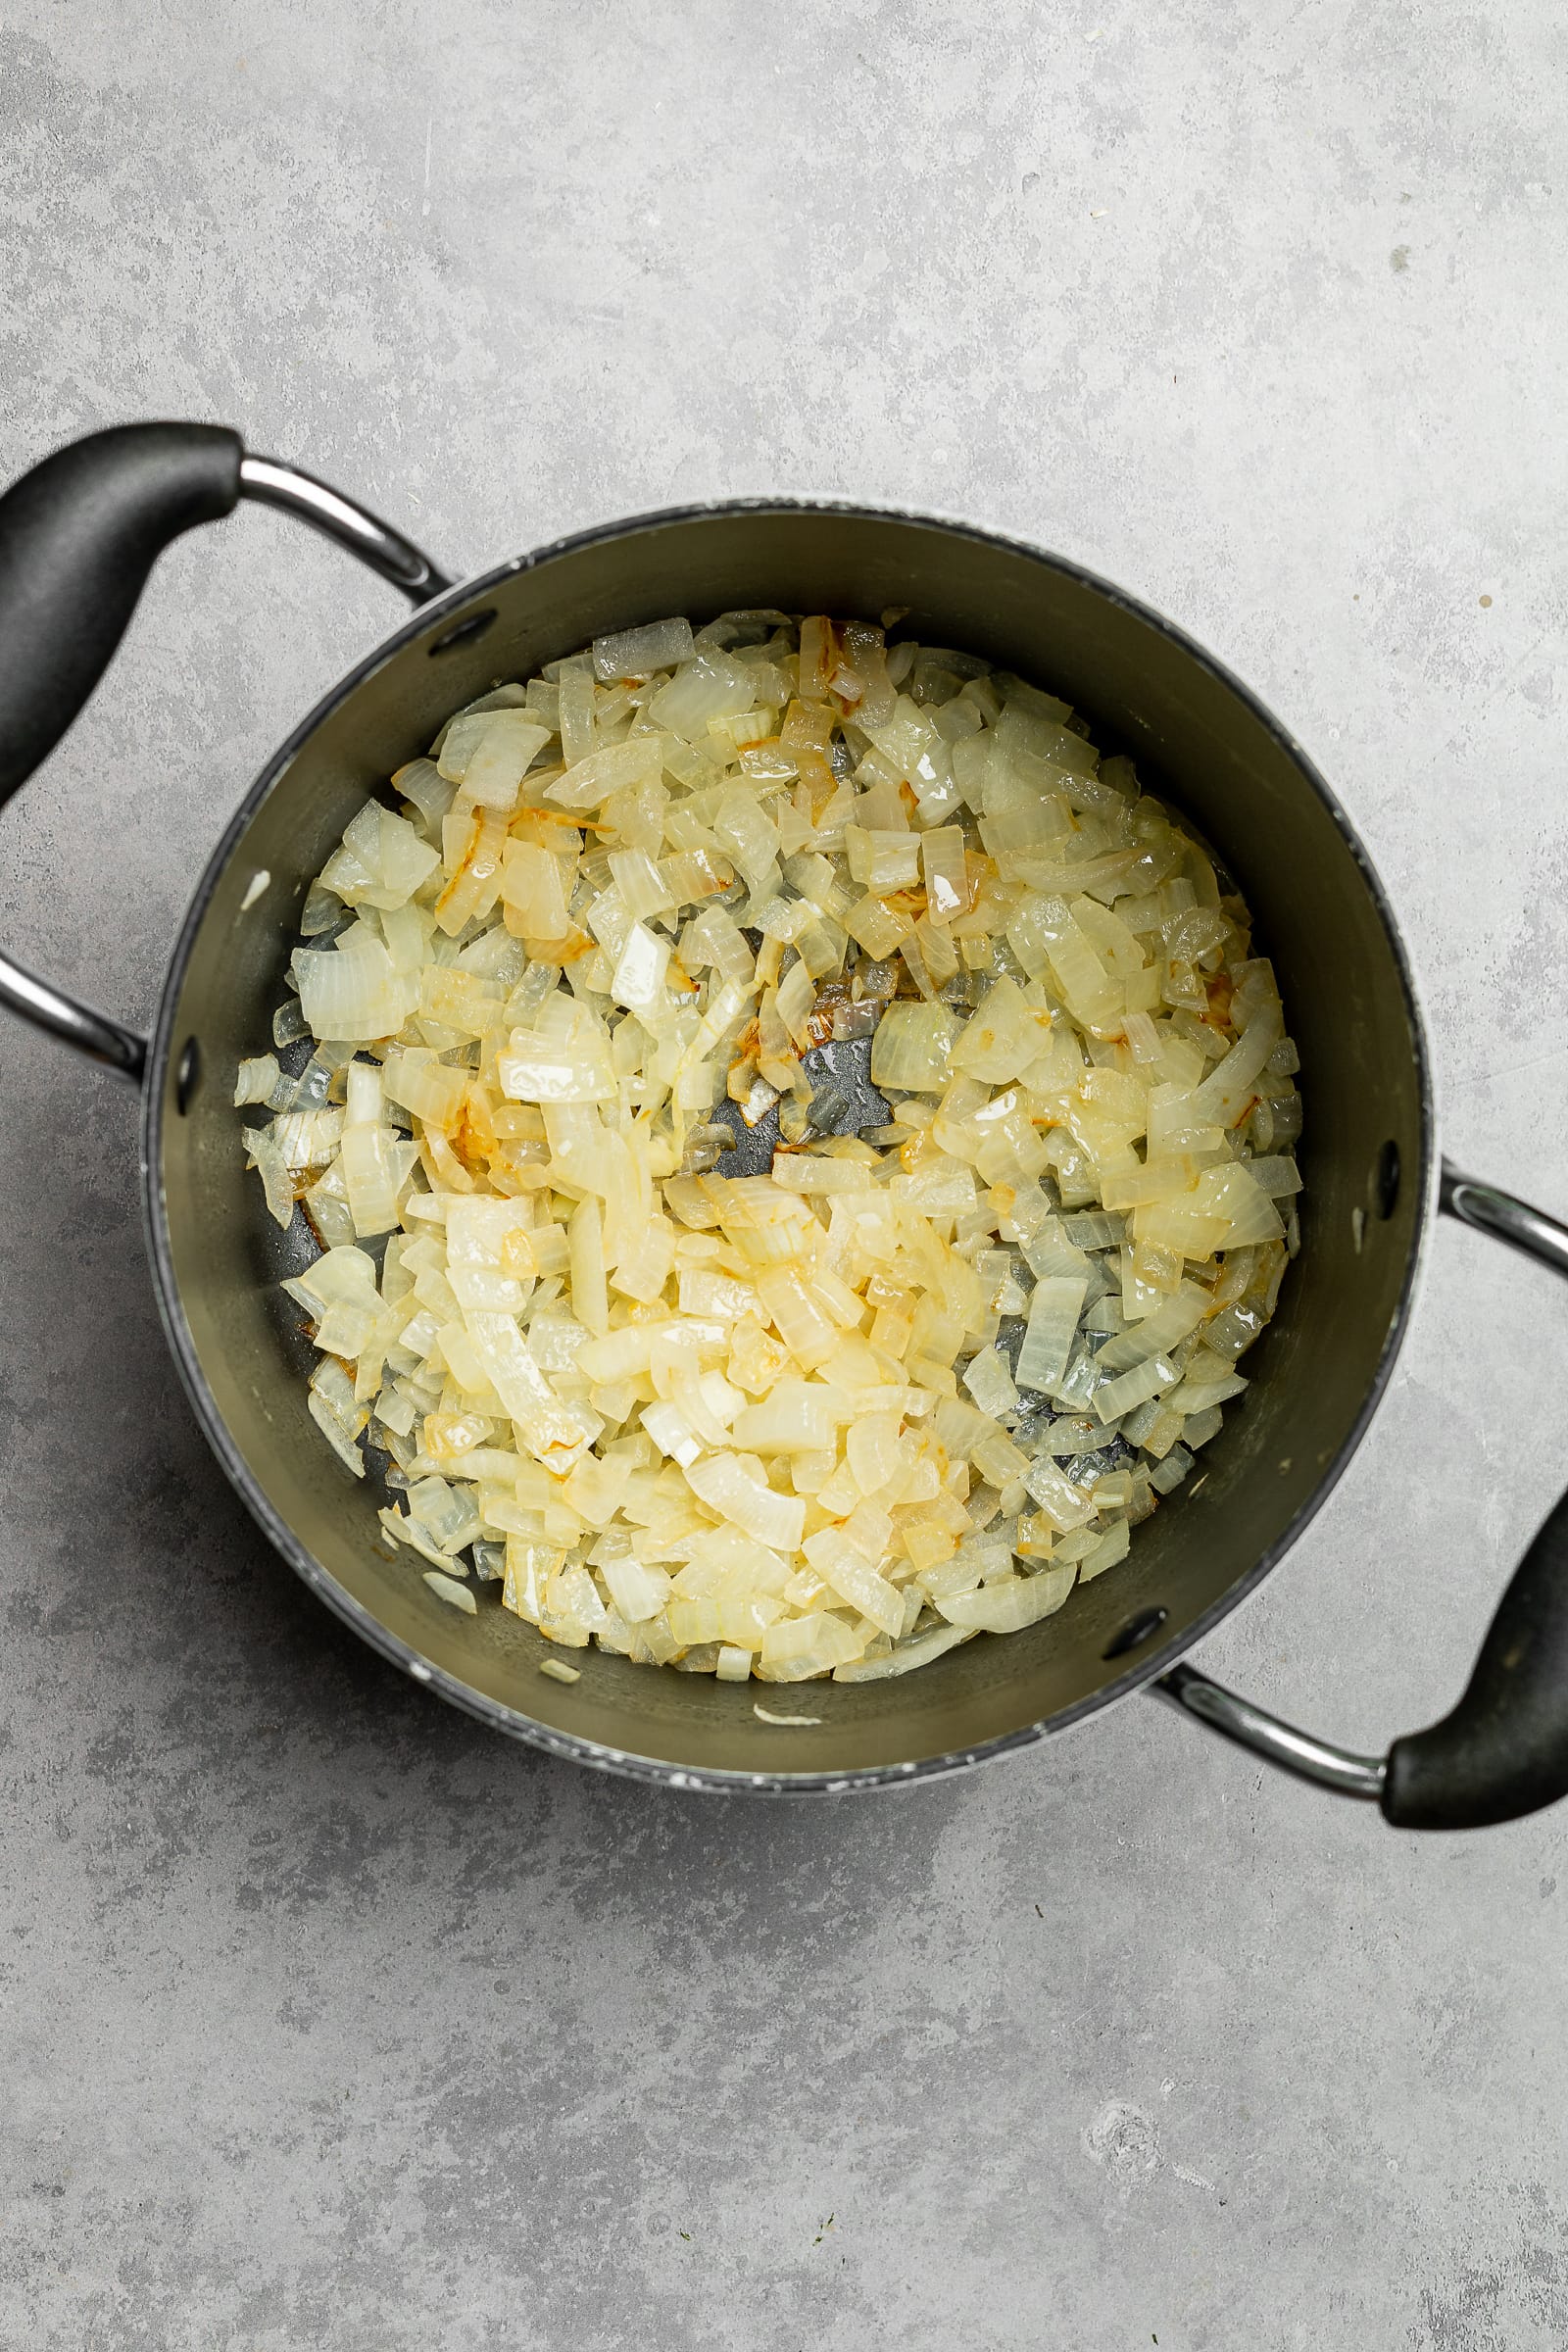 Sautéed onions in a large soup pot.